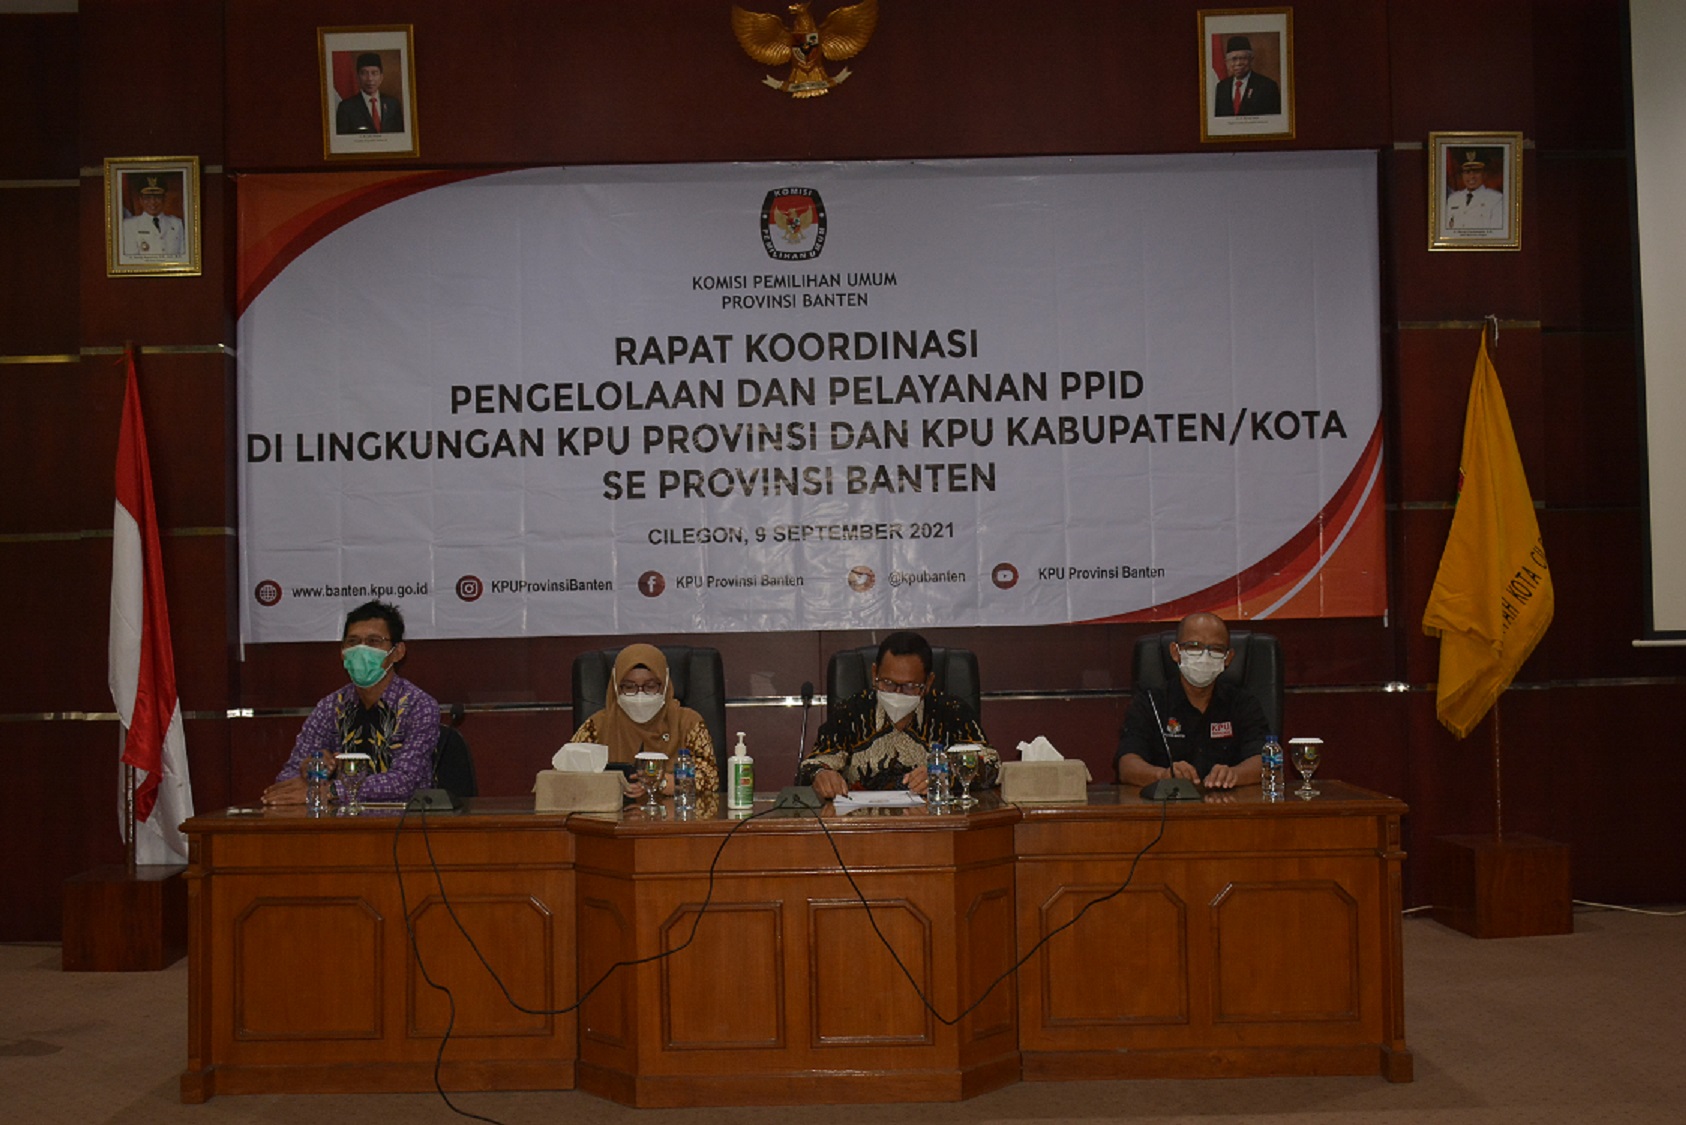 Rapat Koordinasi Pengelolaan dan Pelayanan PPID di Lingkungan KPU Banten